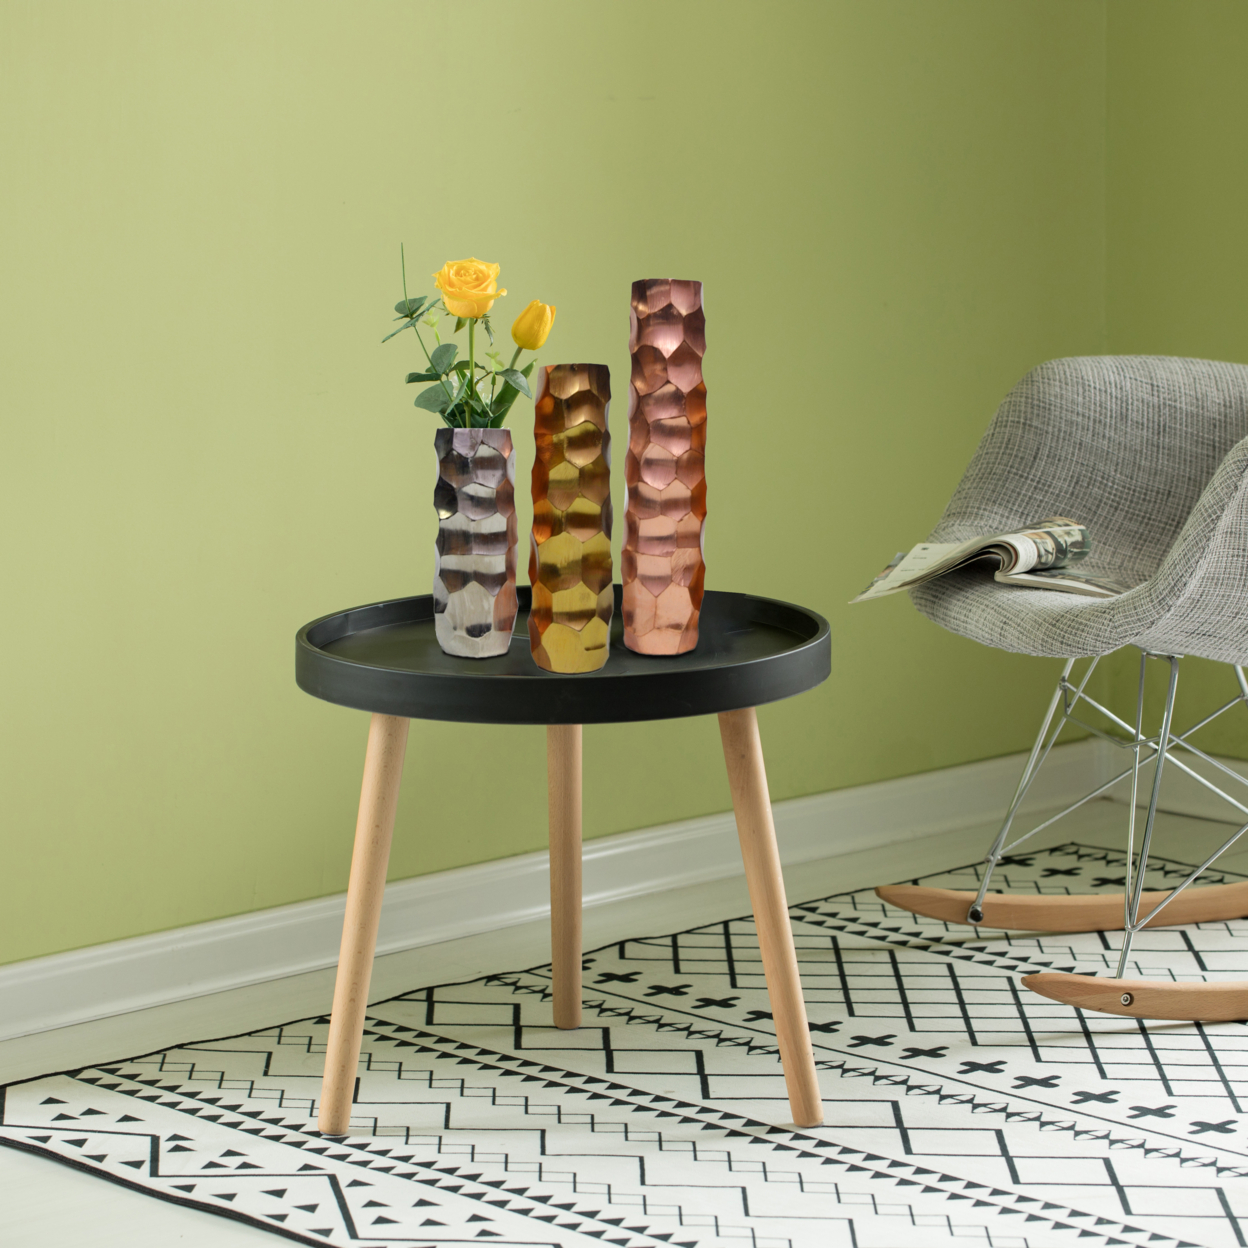 Set Of 3 Decorative Modern Metal Honeycomb Design Table Flower Vase For Dining Room